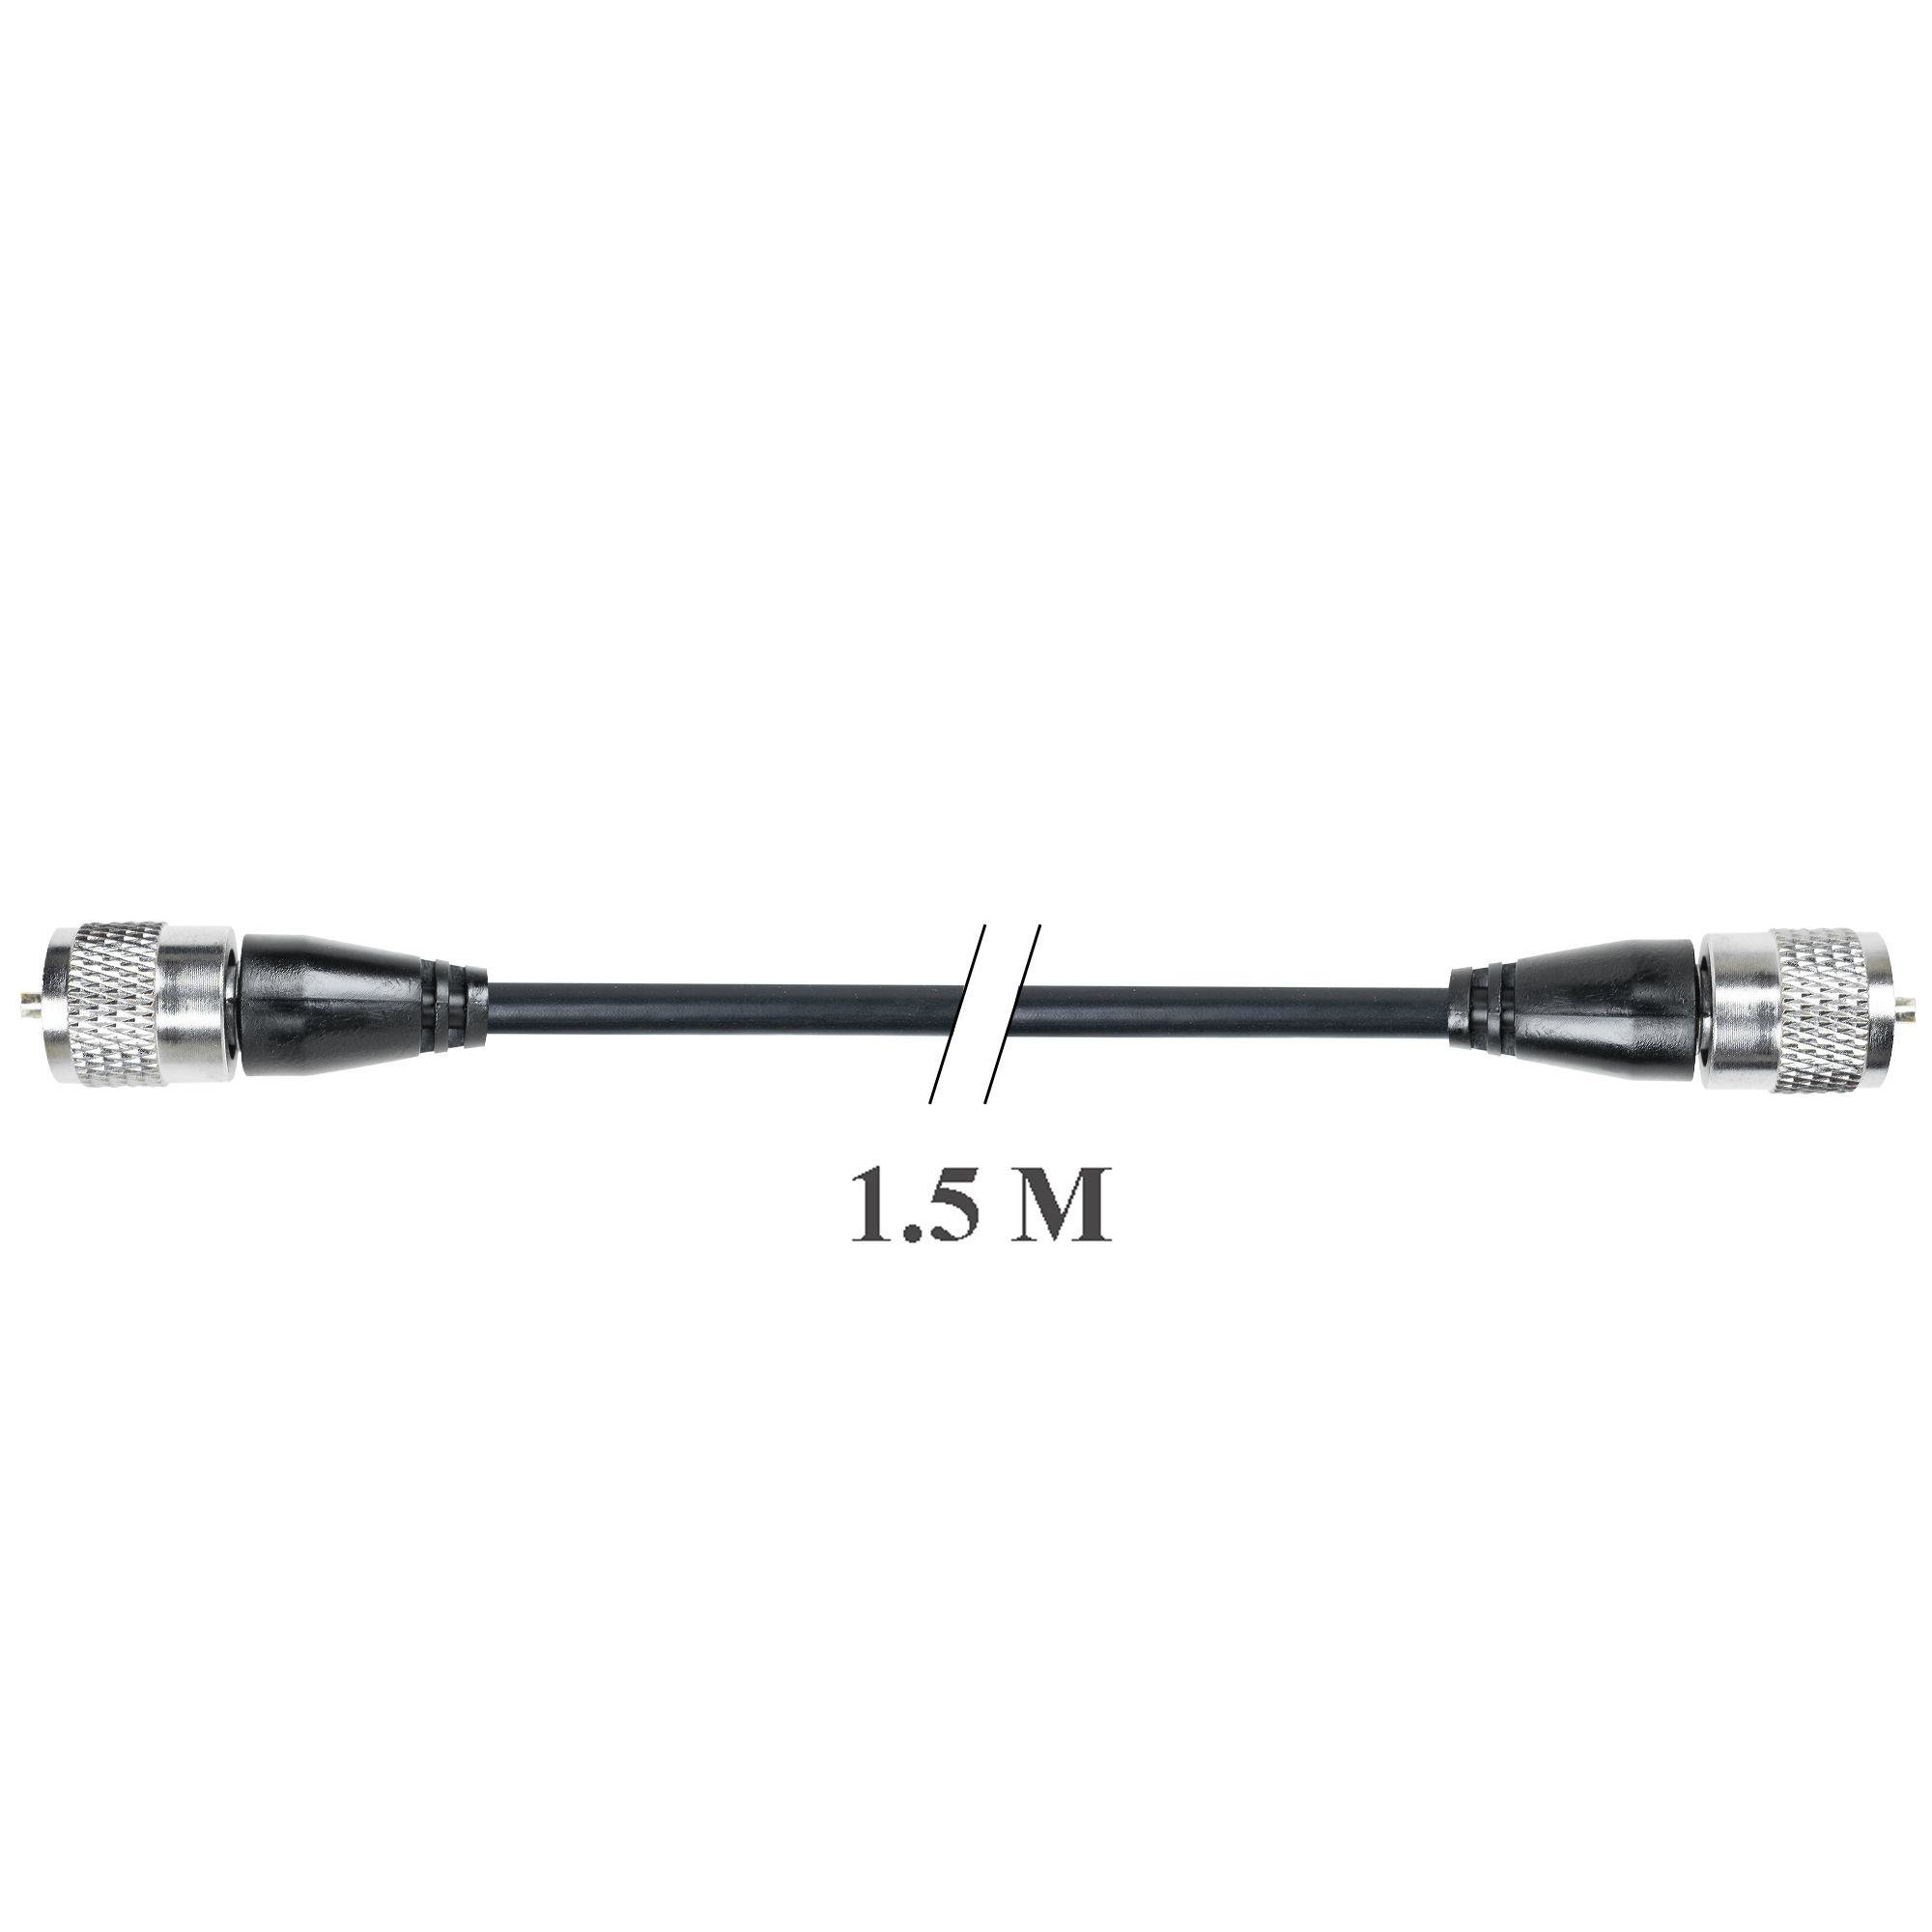 Cablu de legatura PNI R150 cu mufe PL259 lungime 1.5m image5